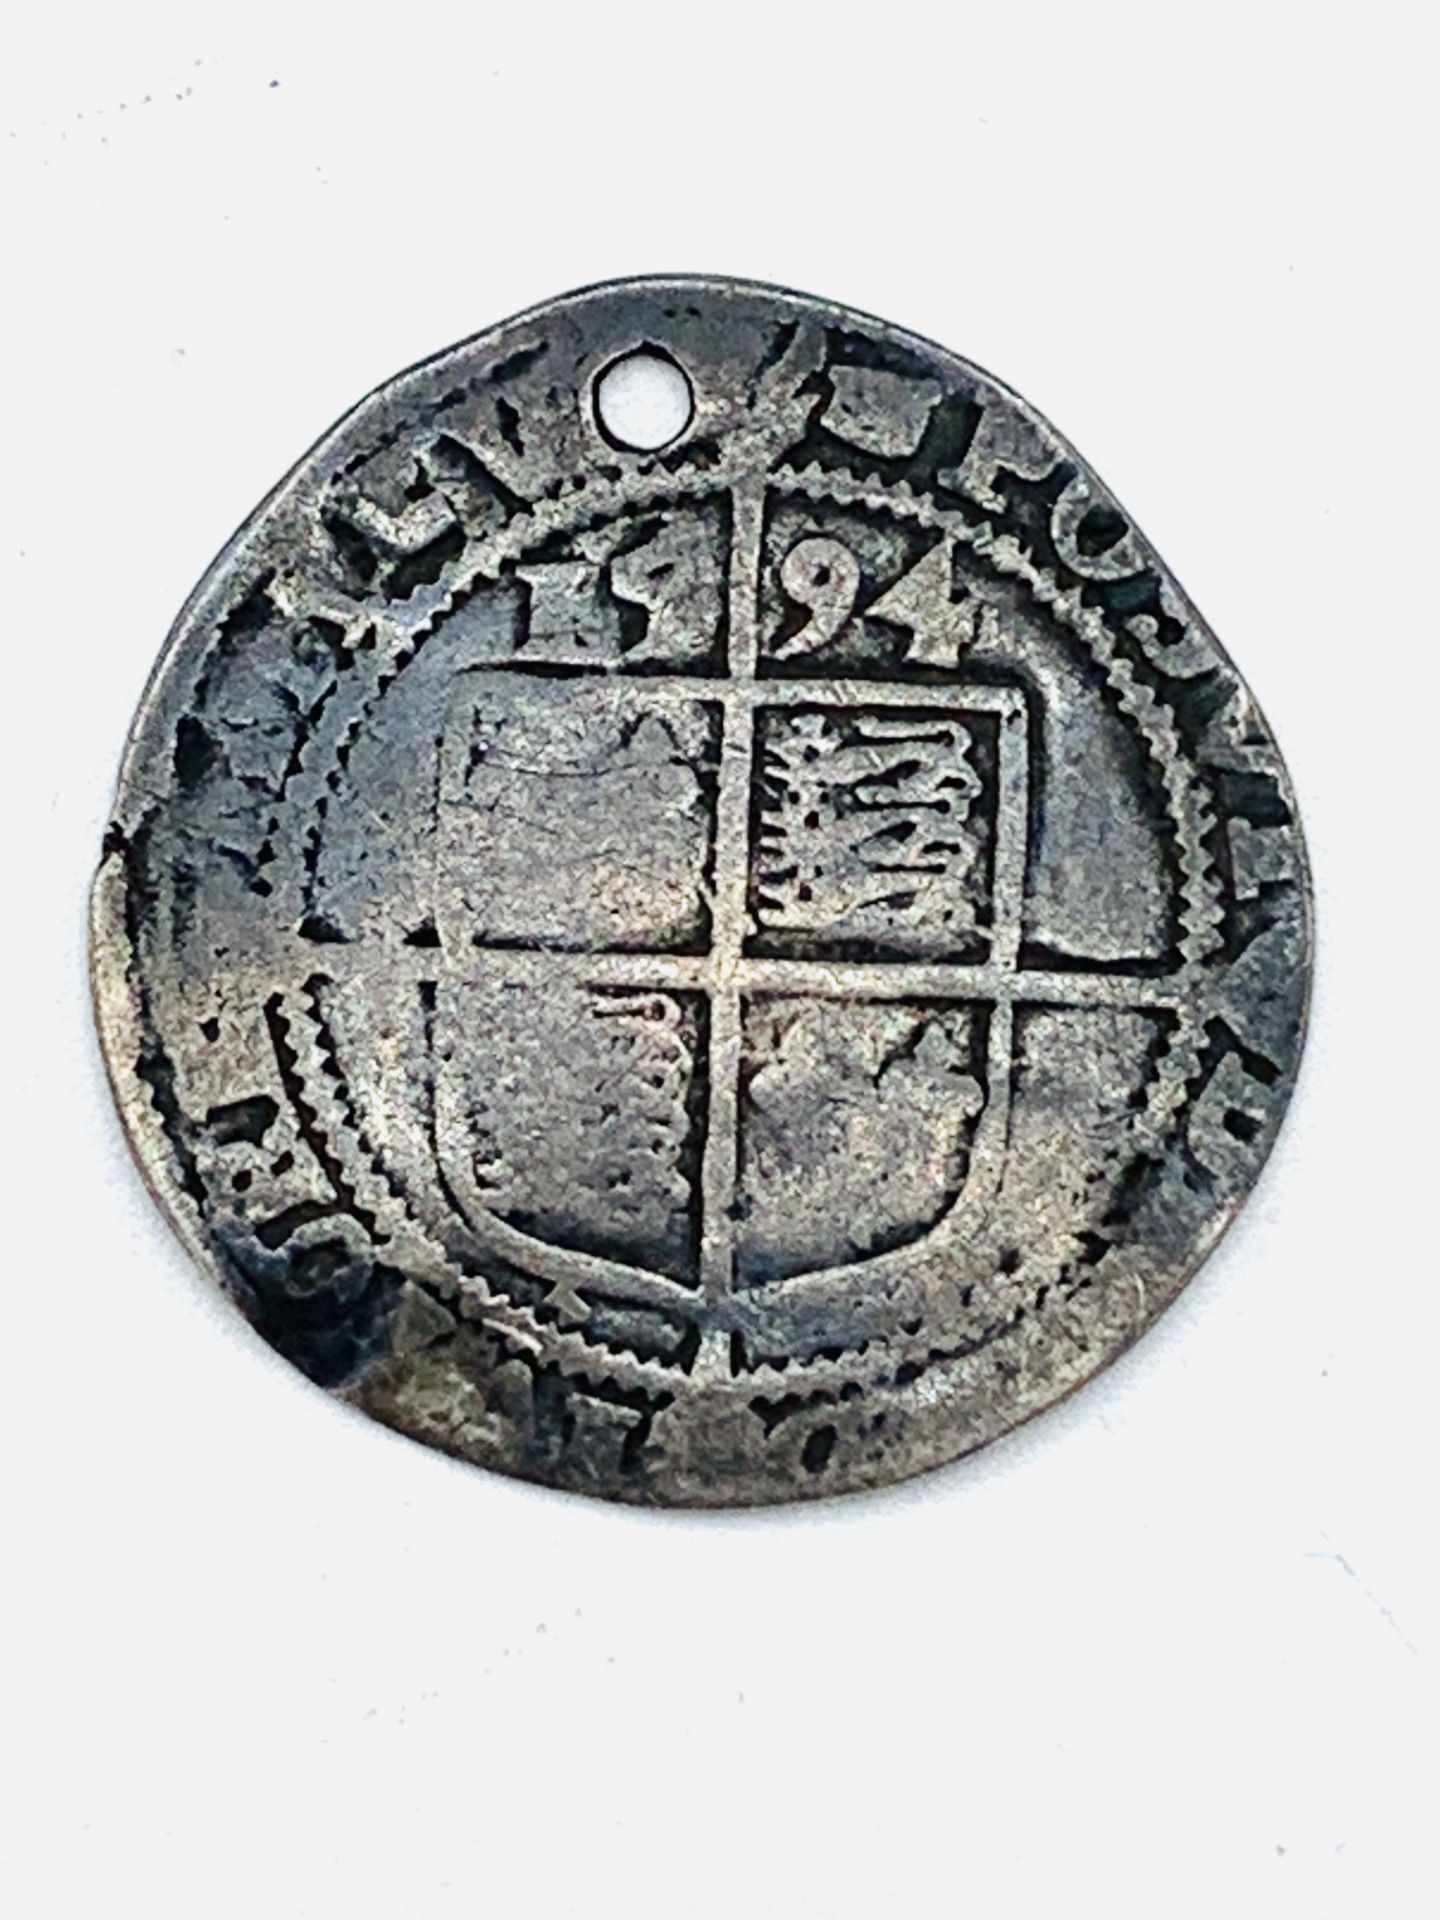 Elizabeth I silver sixpence - Image 2 of 2